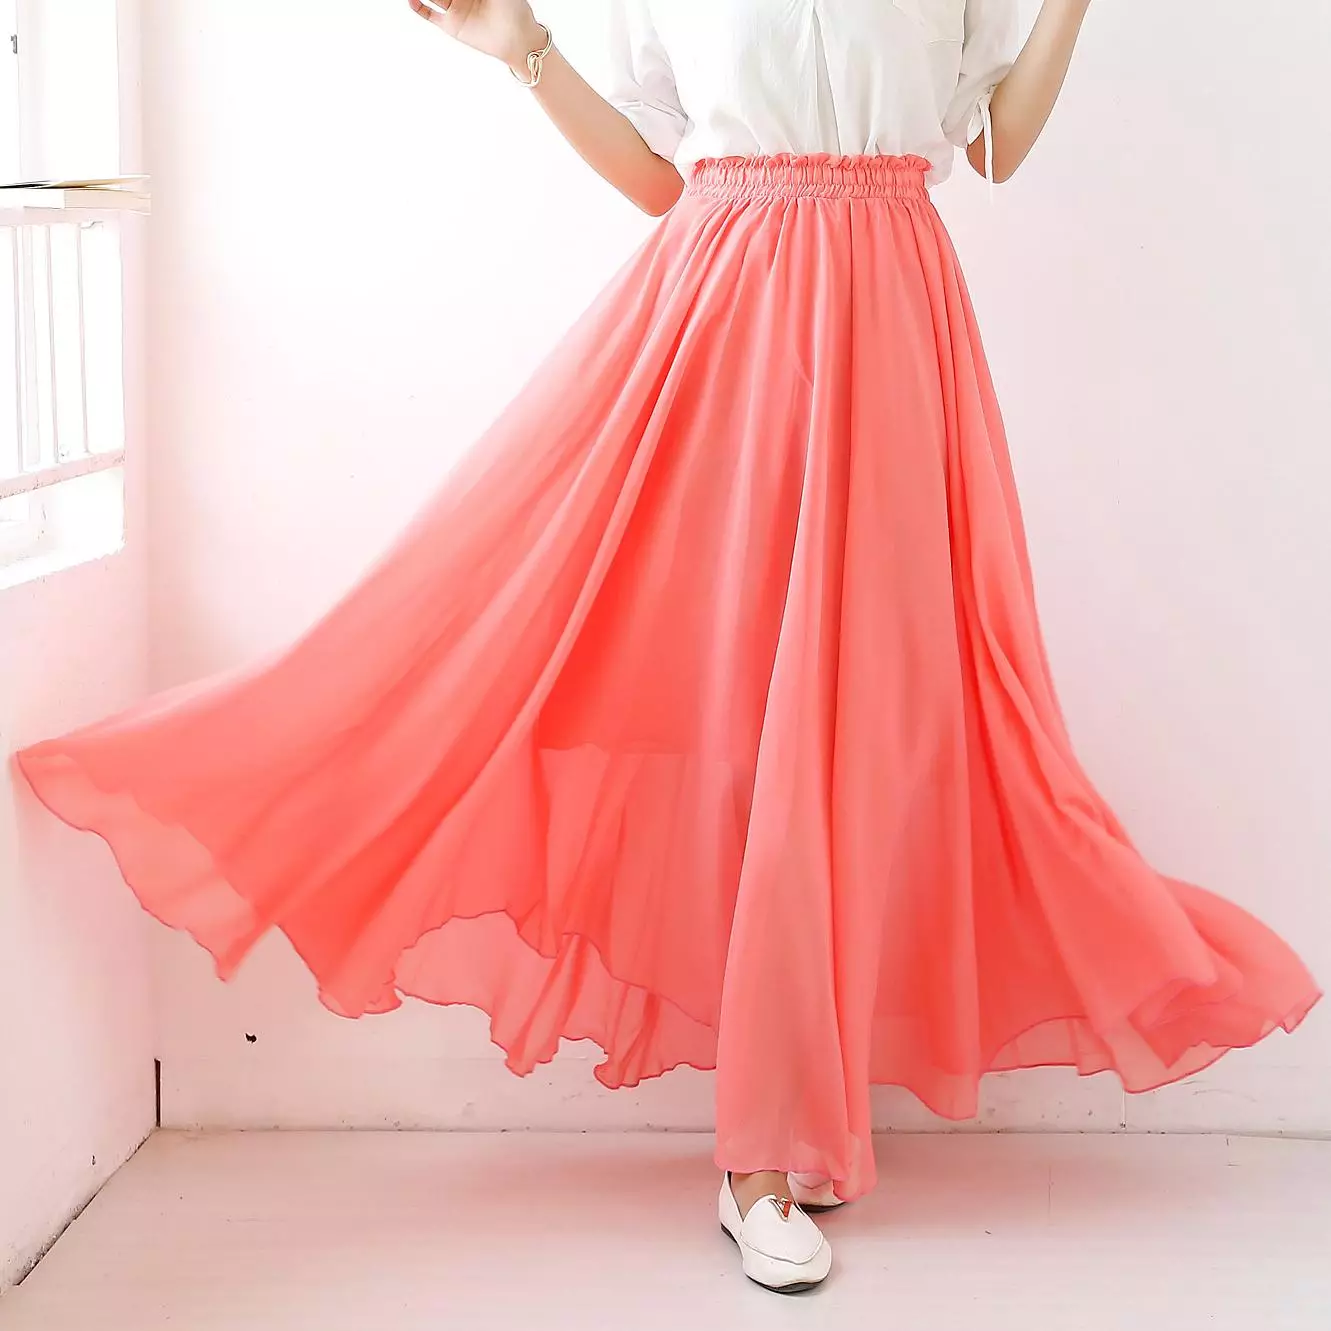 Chiffon coral skirt.